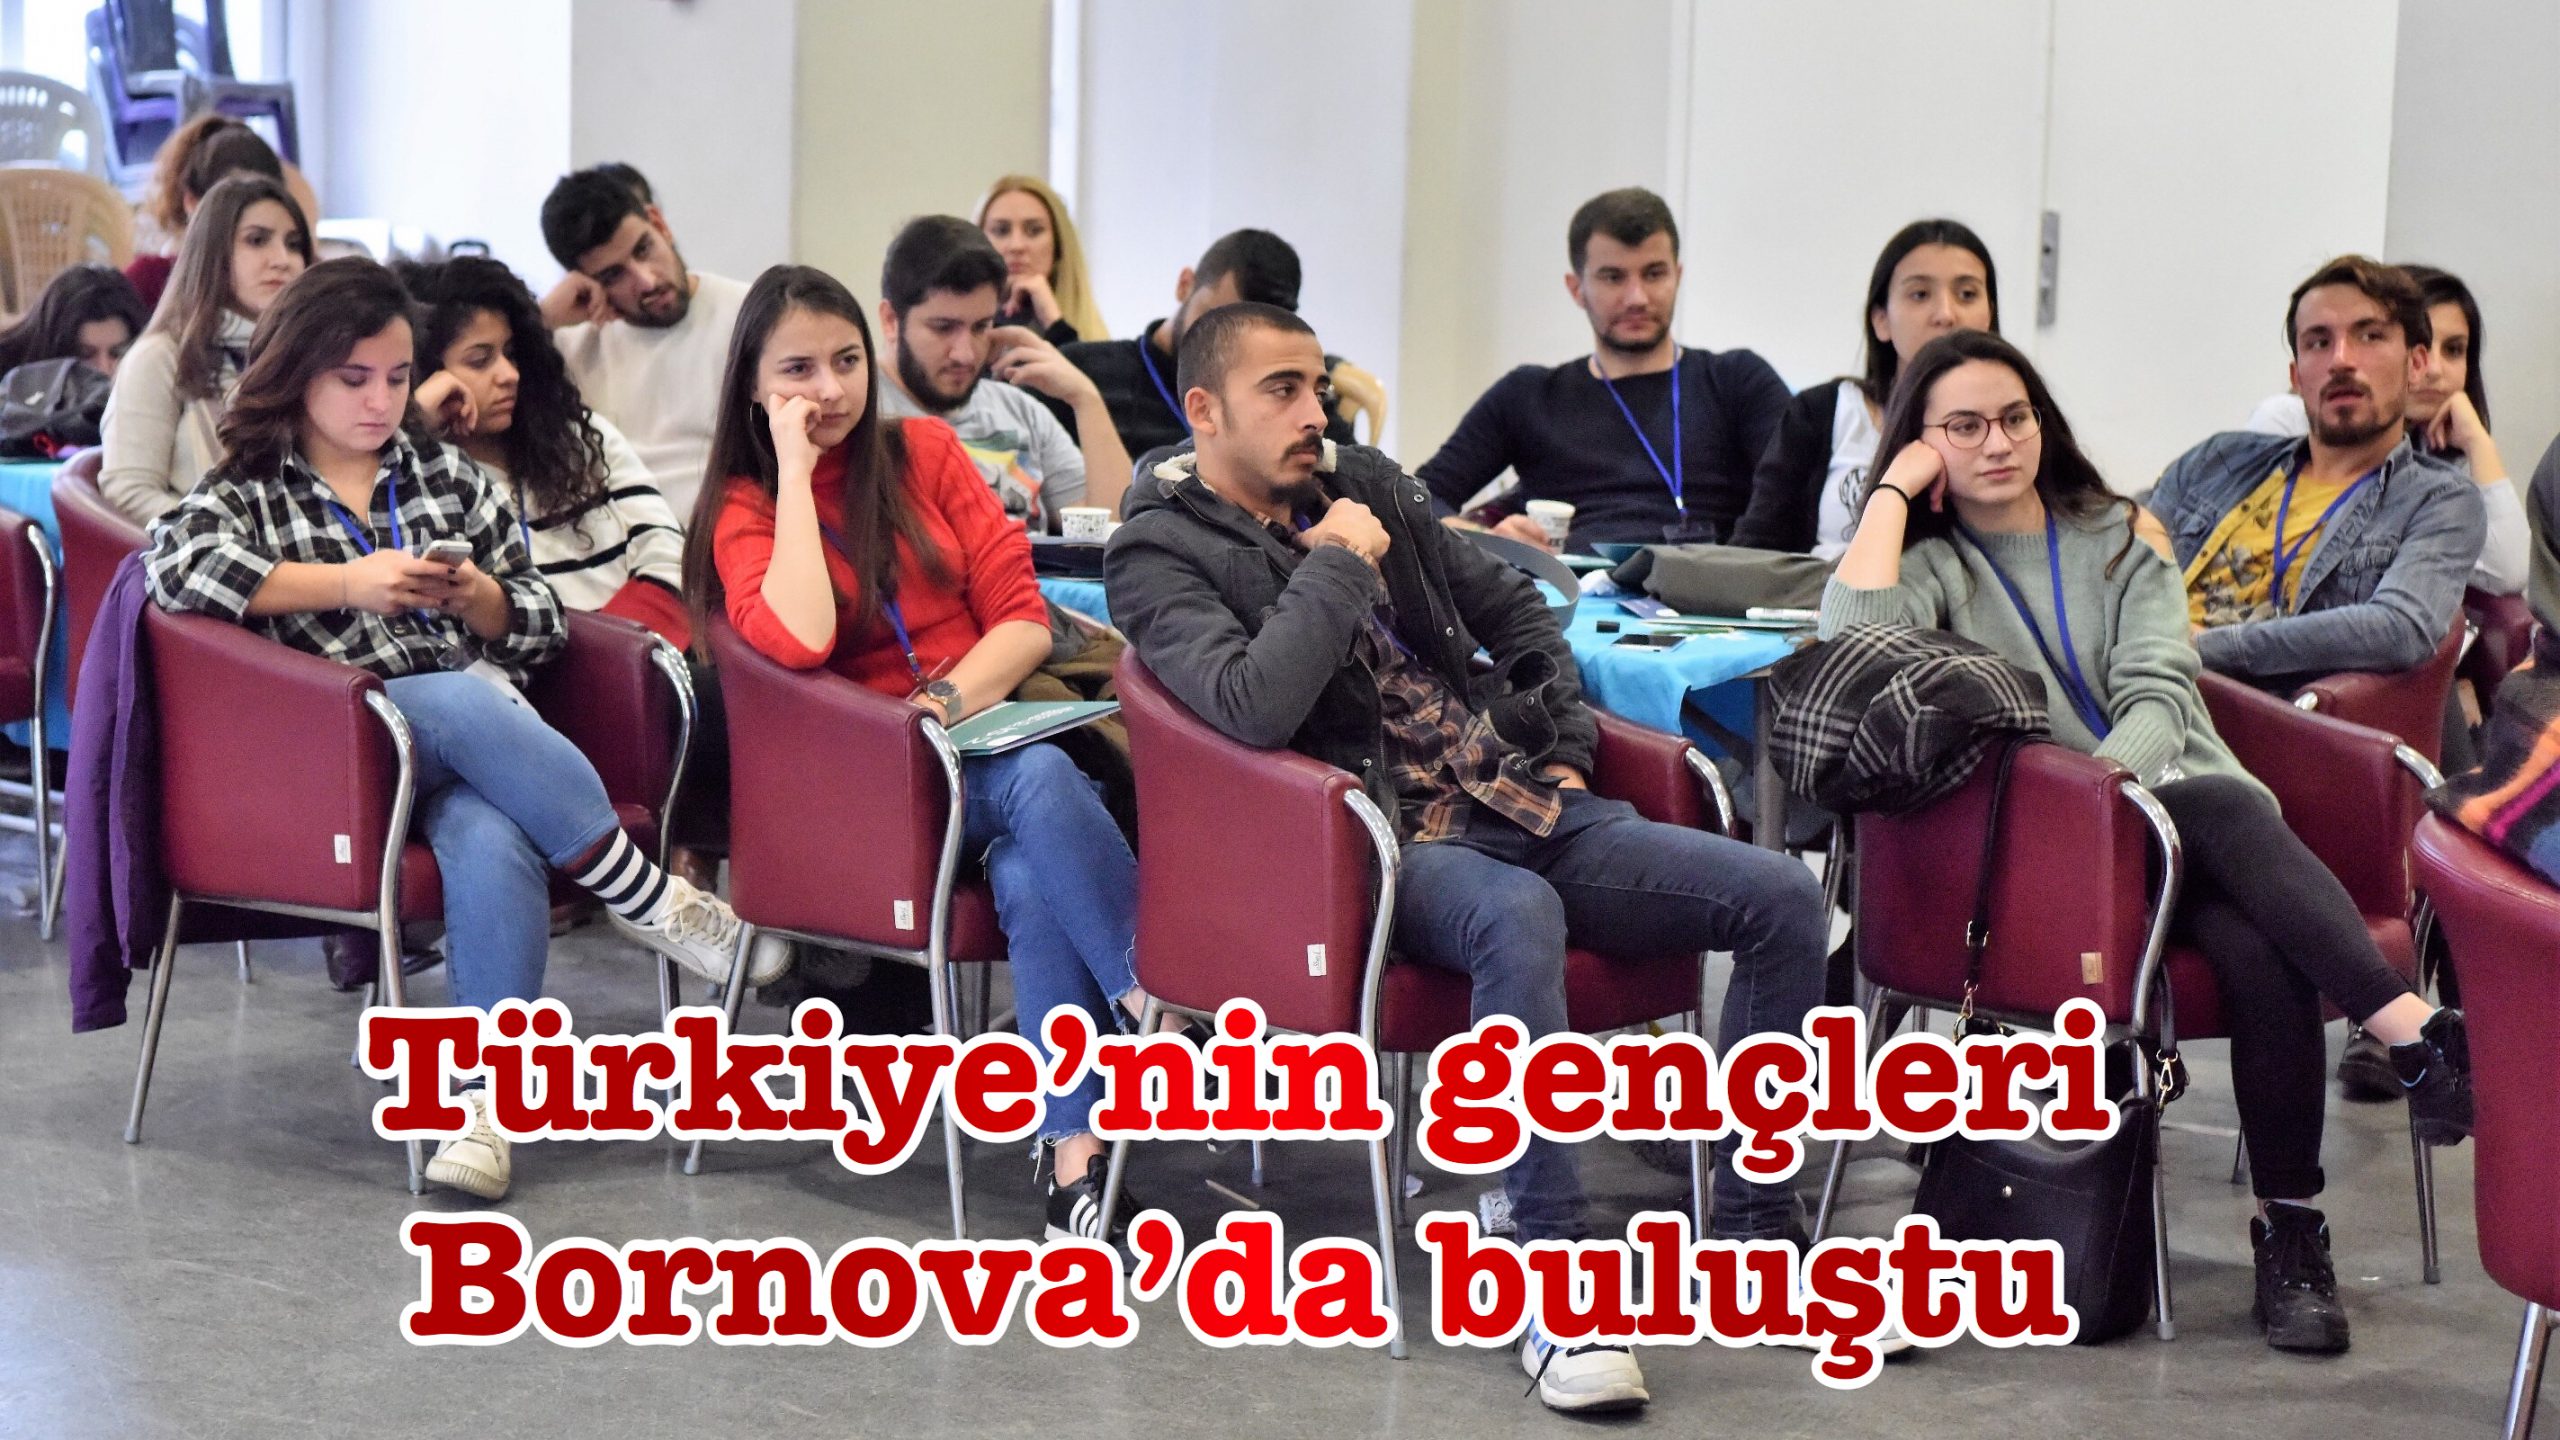 Türkiye’nin gençleri Bornova’da buluştu